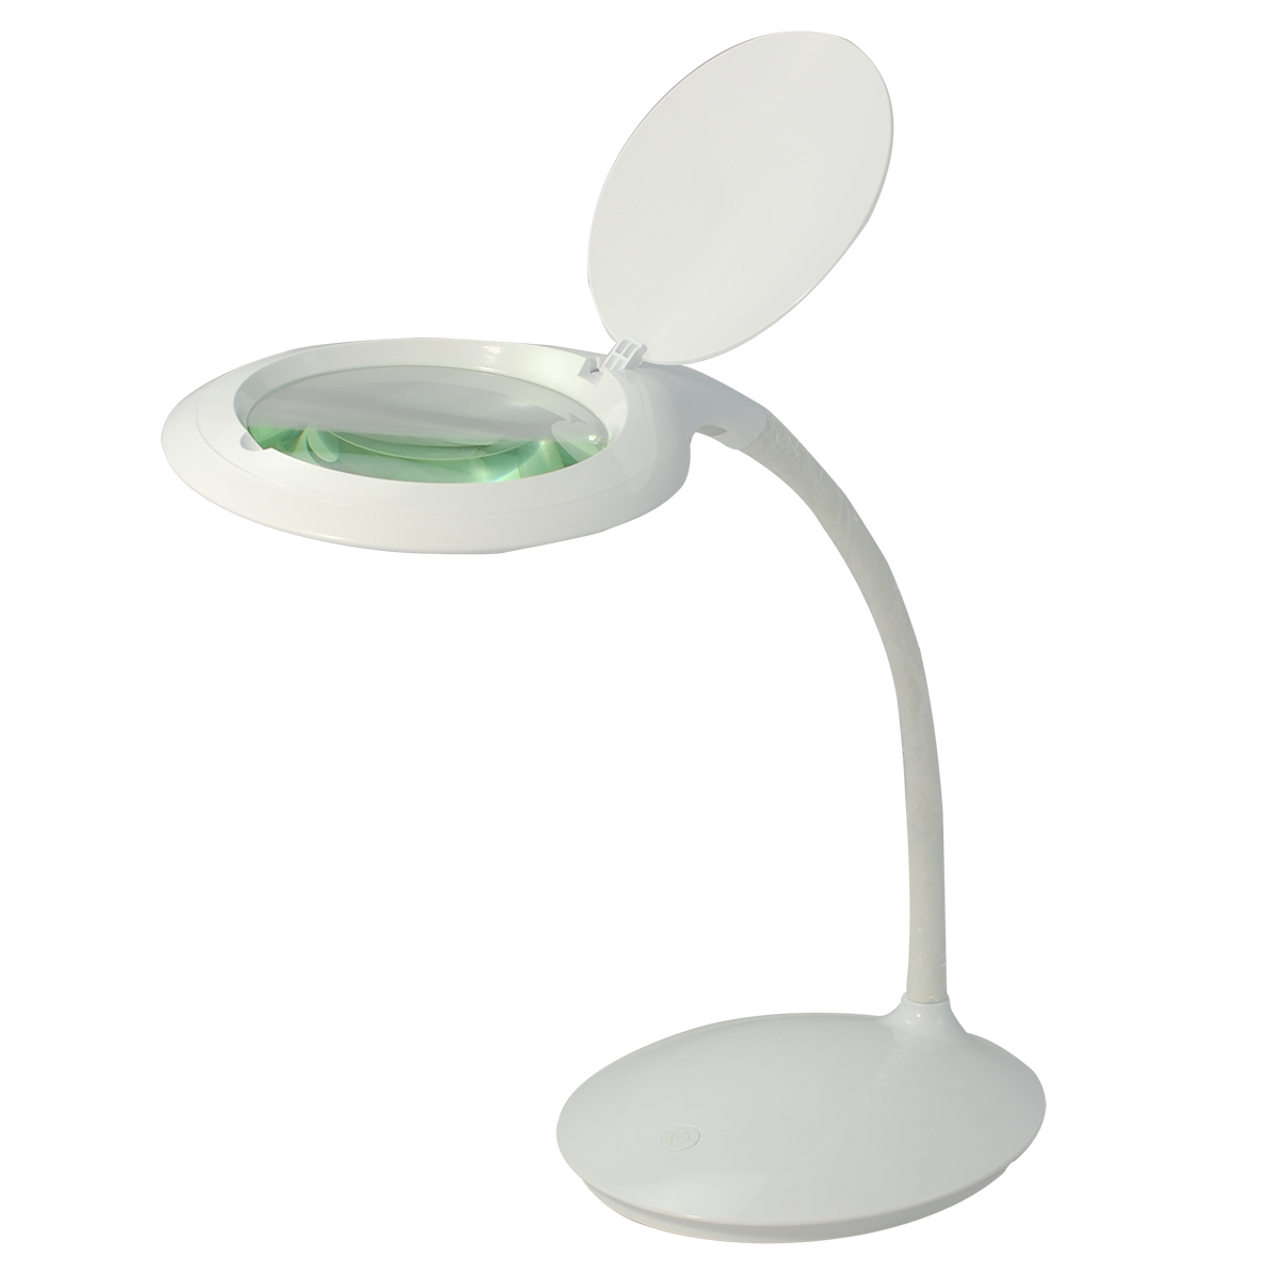 SMD LED Desktop Magnifying Lamp 3 Diopter, Adjustable Metal Gooseneck for  Reading, Crafts, Hobbies